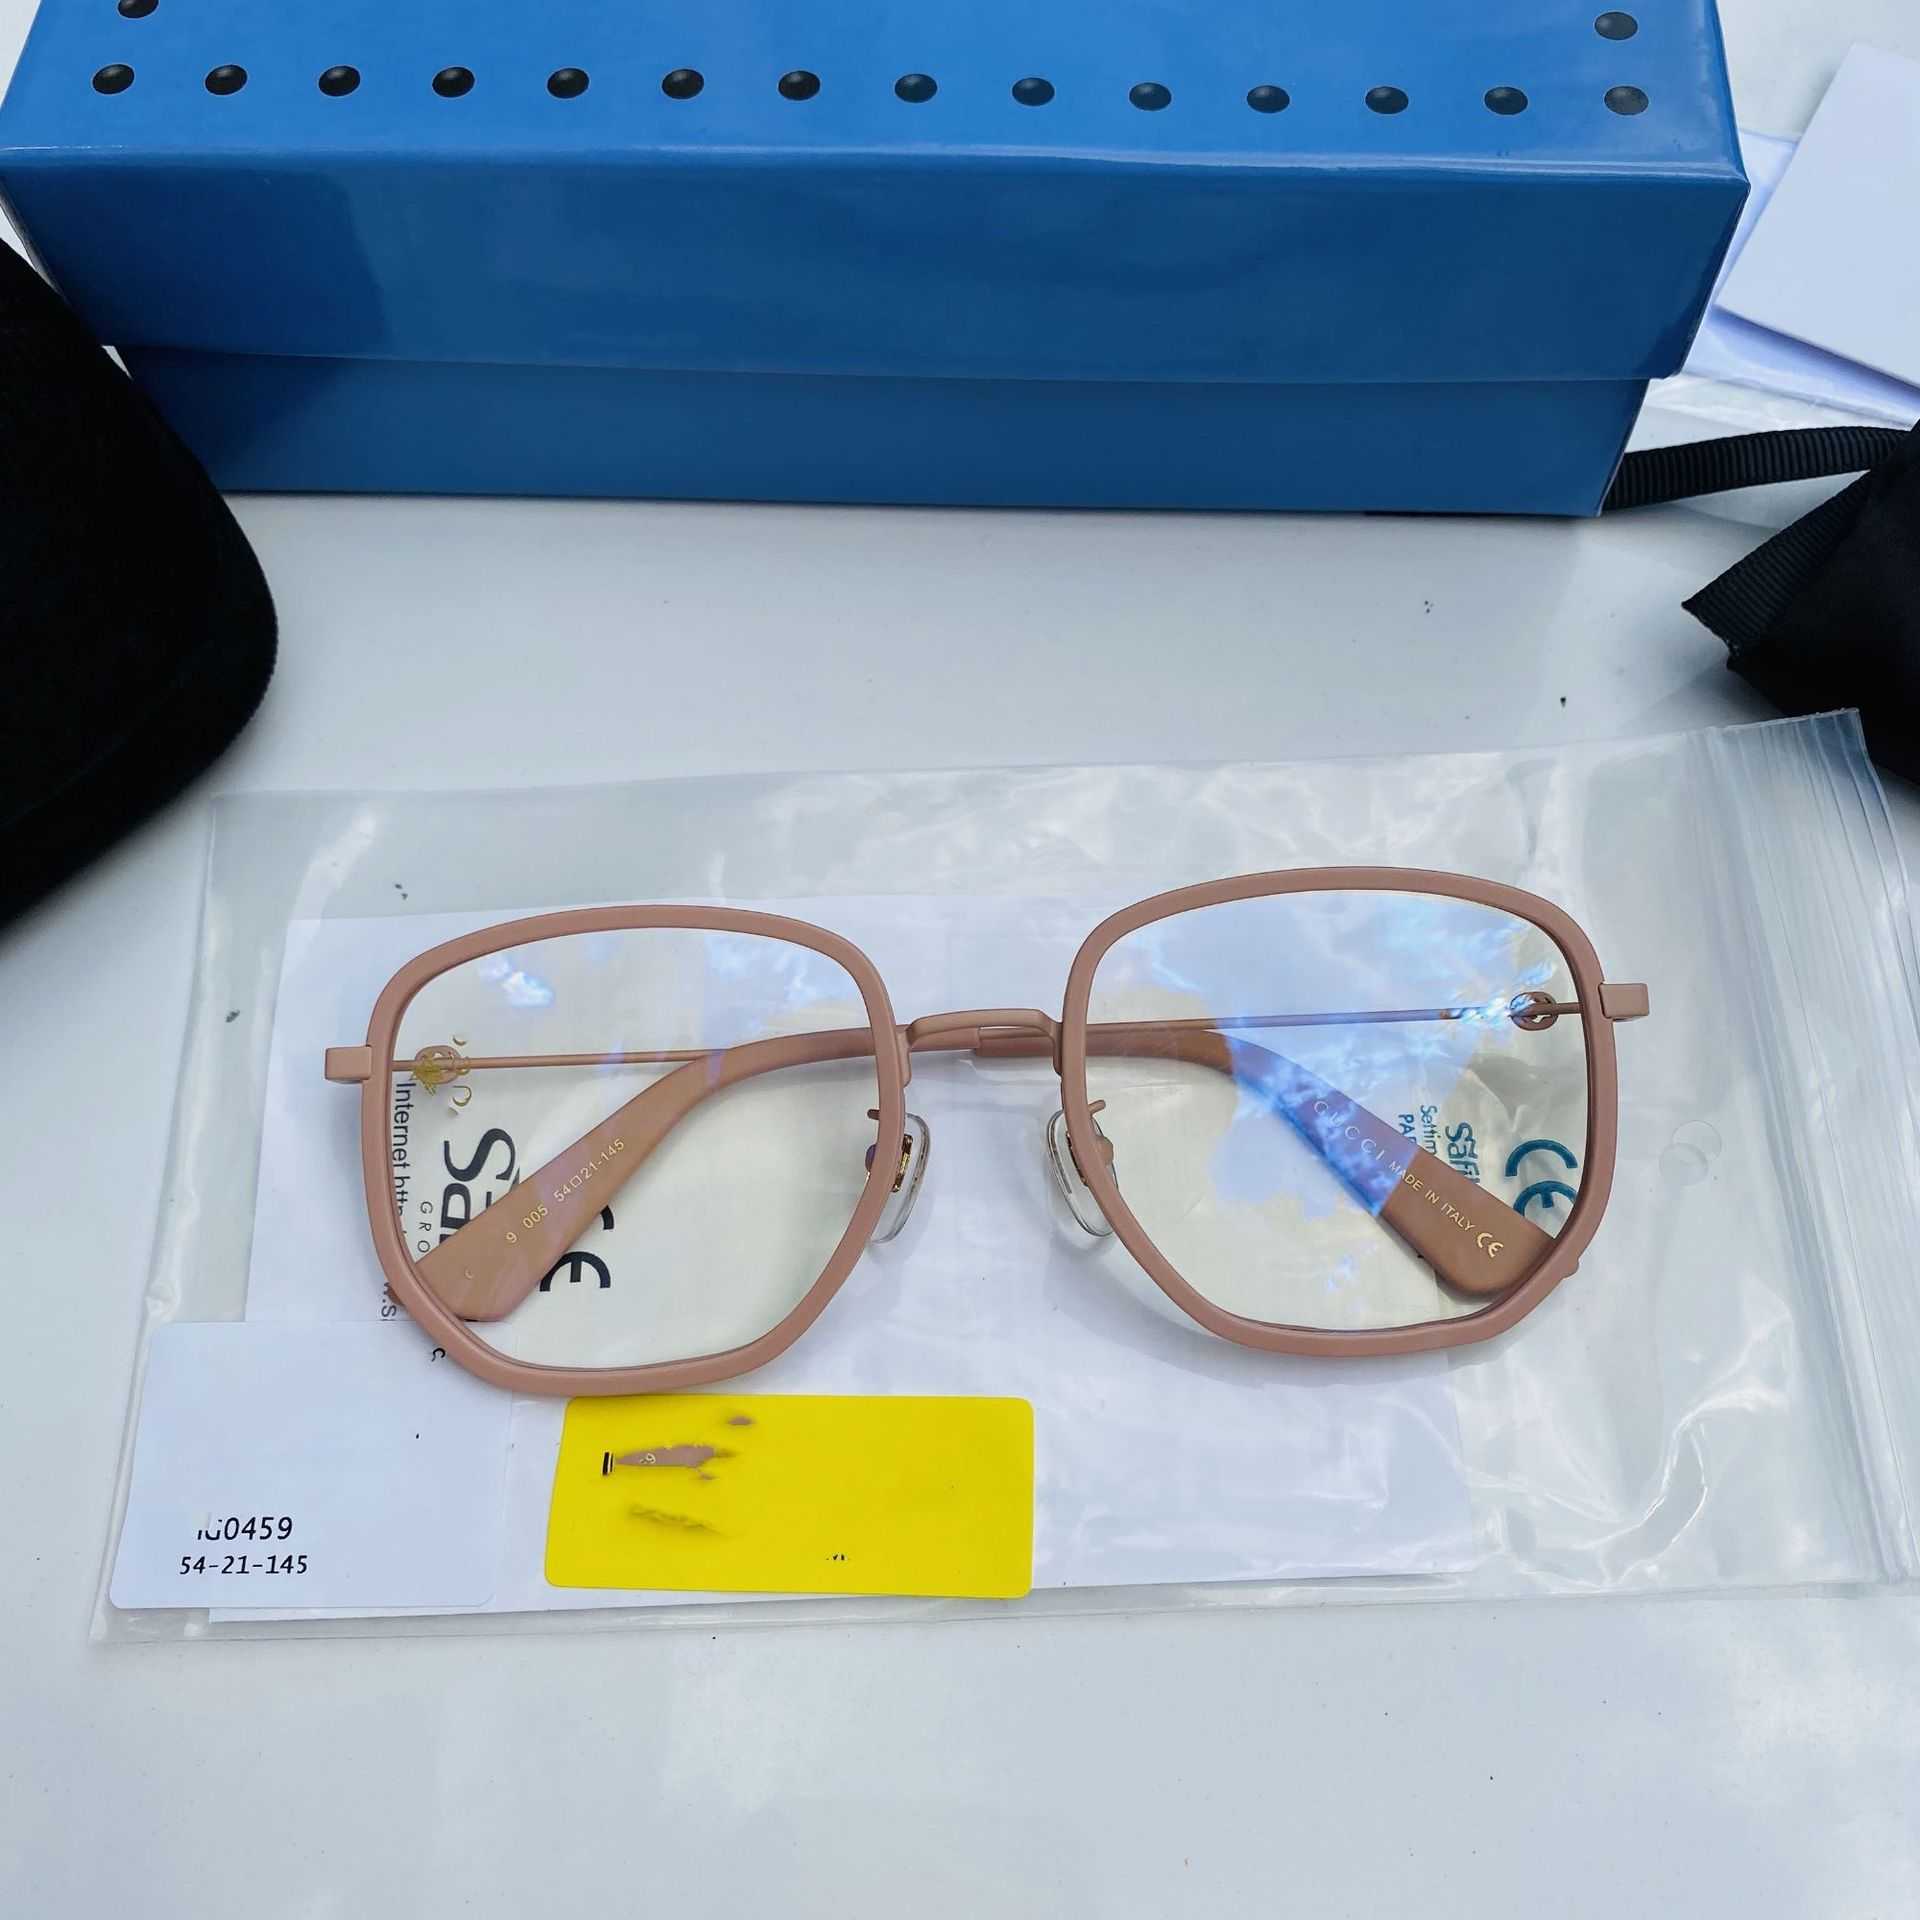 2023 Nya lyxdesigner solglasögon Nya GG0459 Flat Lens har en oregelbunden ram och är populär. Det vanliga ansiktet kan paras med ett myopiskt litet bi